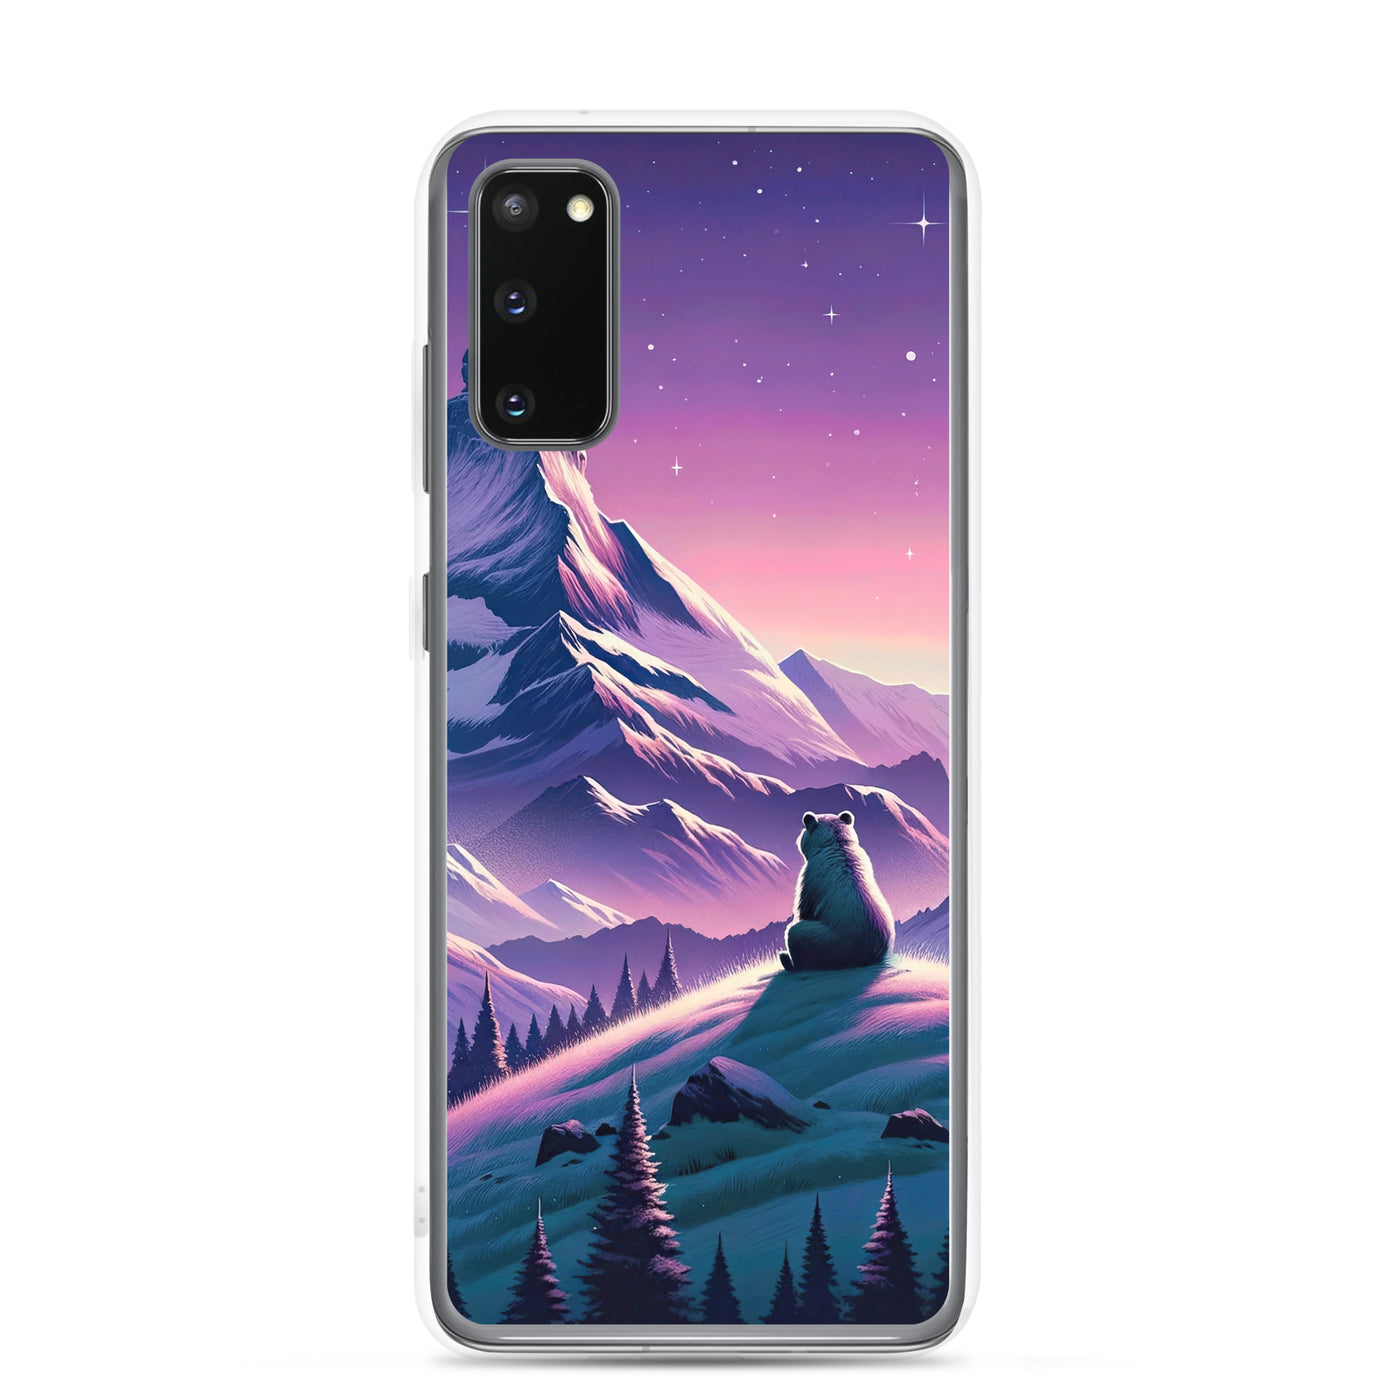 Bezaubernder Alpenabend mit Bär, lavendel-rosafarbener Himmel (AN) - Samsung Schutzhülle (durchsichtig) xxx yyy zzz Samsung Galaxy S20